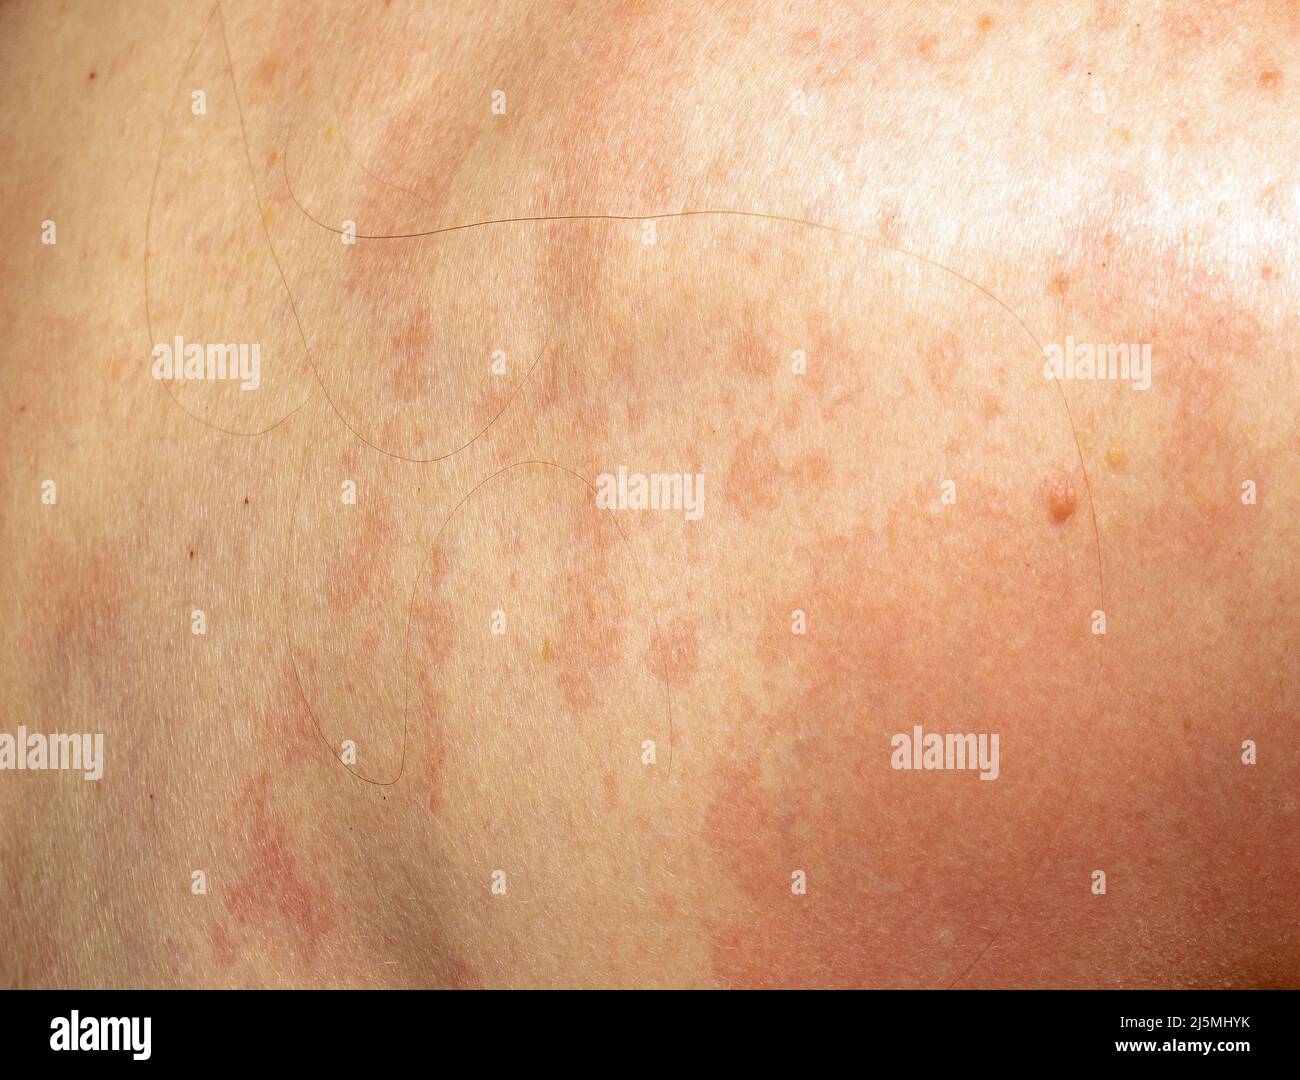 Psoriasis état de santé taches rouges sur le dos de la peau Photo ...